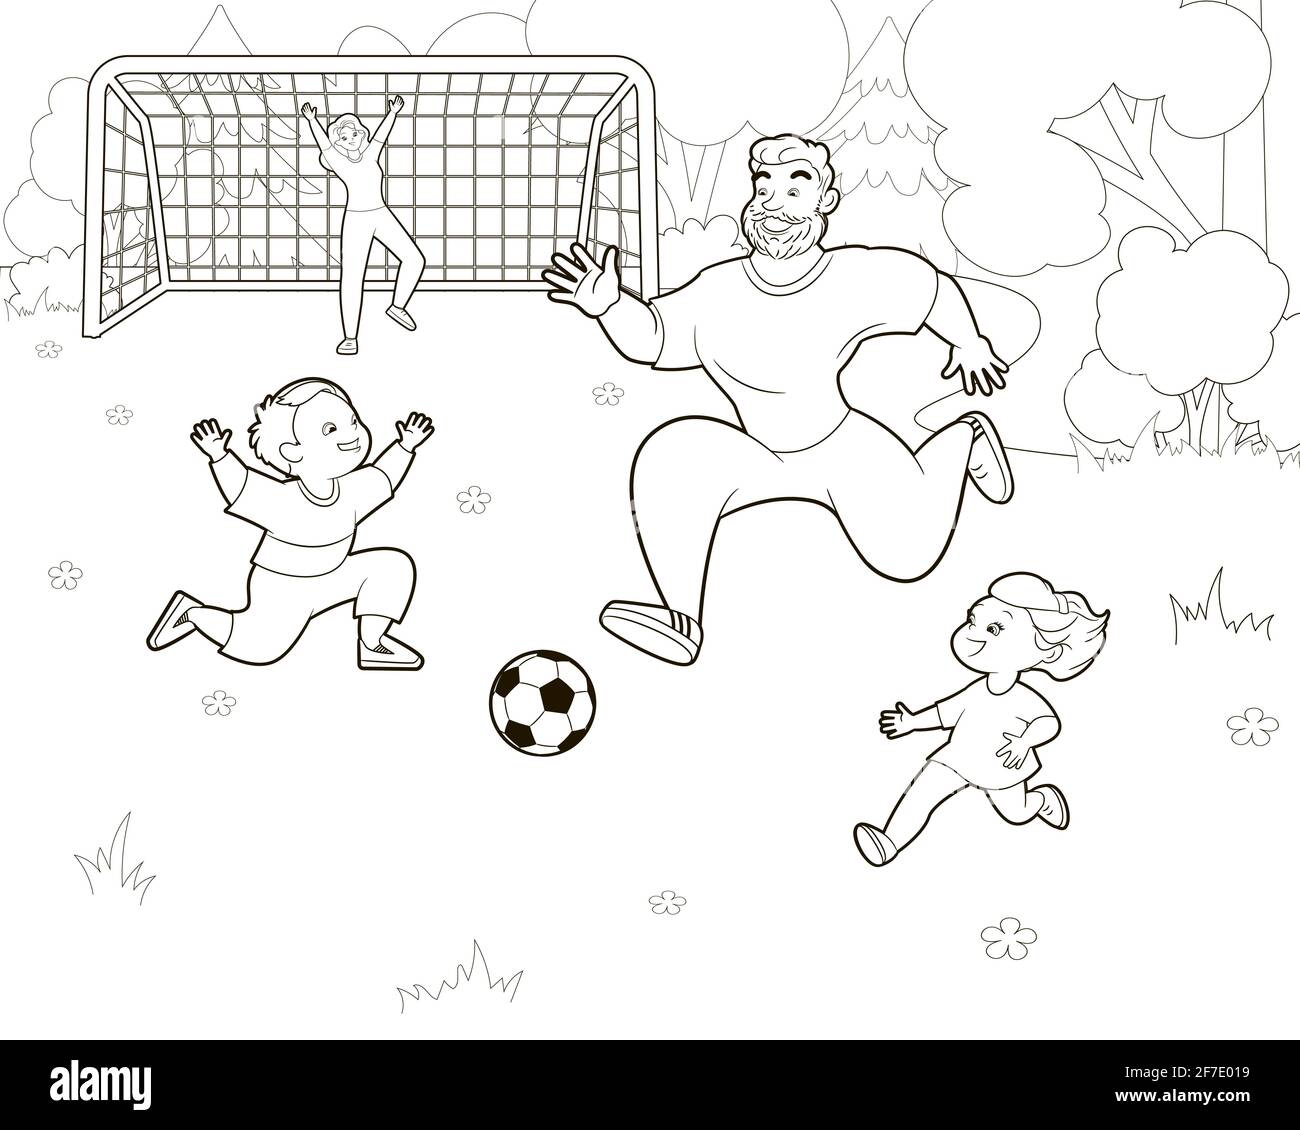 Malbuch Familie Fußball spielen auf dem Rasen.Mutter Vater und Kinder kick den Ball.Vector Illustration in Cartoon-Stil, schwarz und weiß Strichkunst Stock Vektor